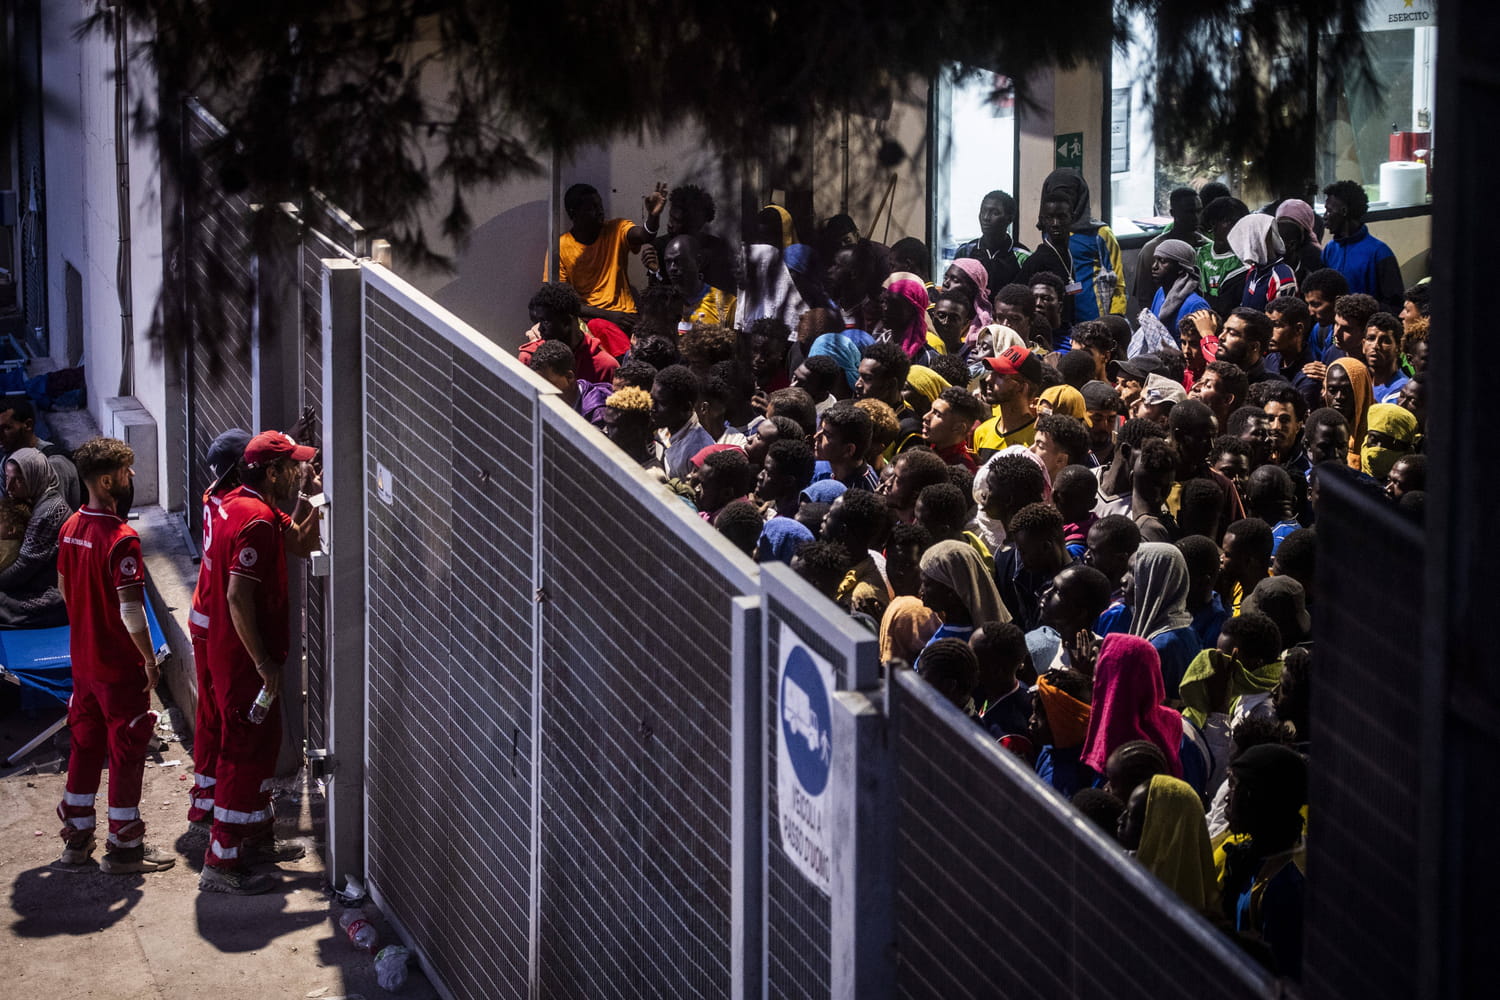 6000 migrants en quelques heures, comment expliquer cet afflux massif de personnes à Lampedusa ?